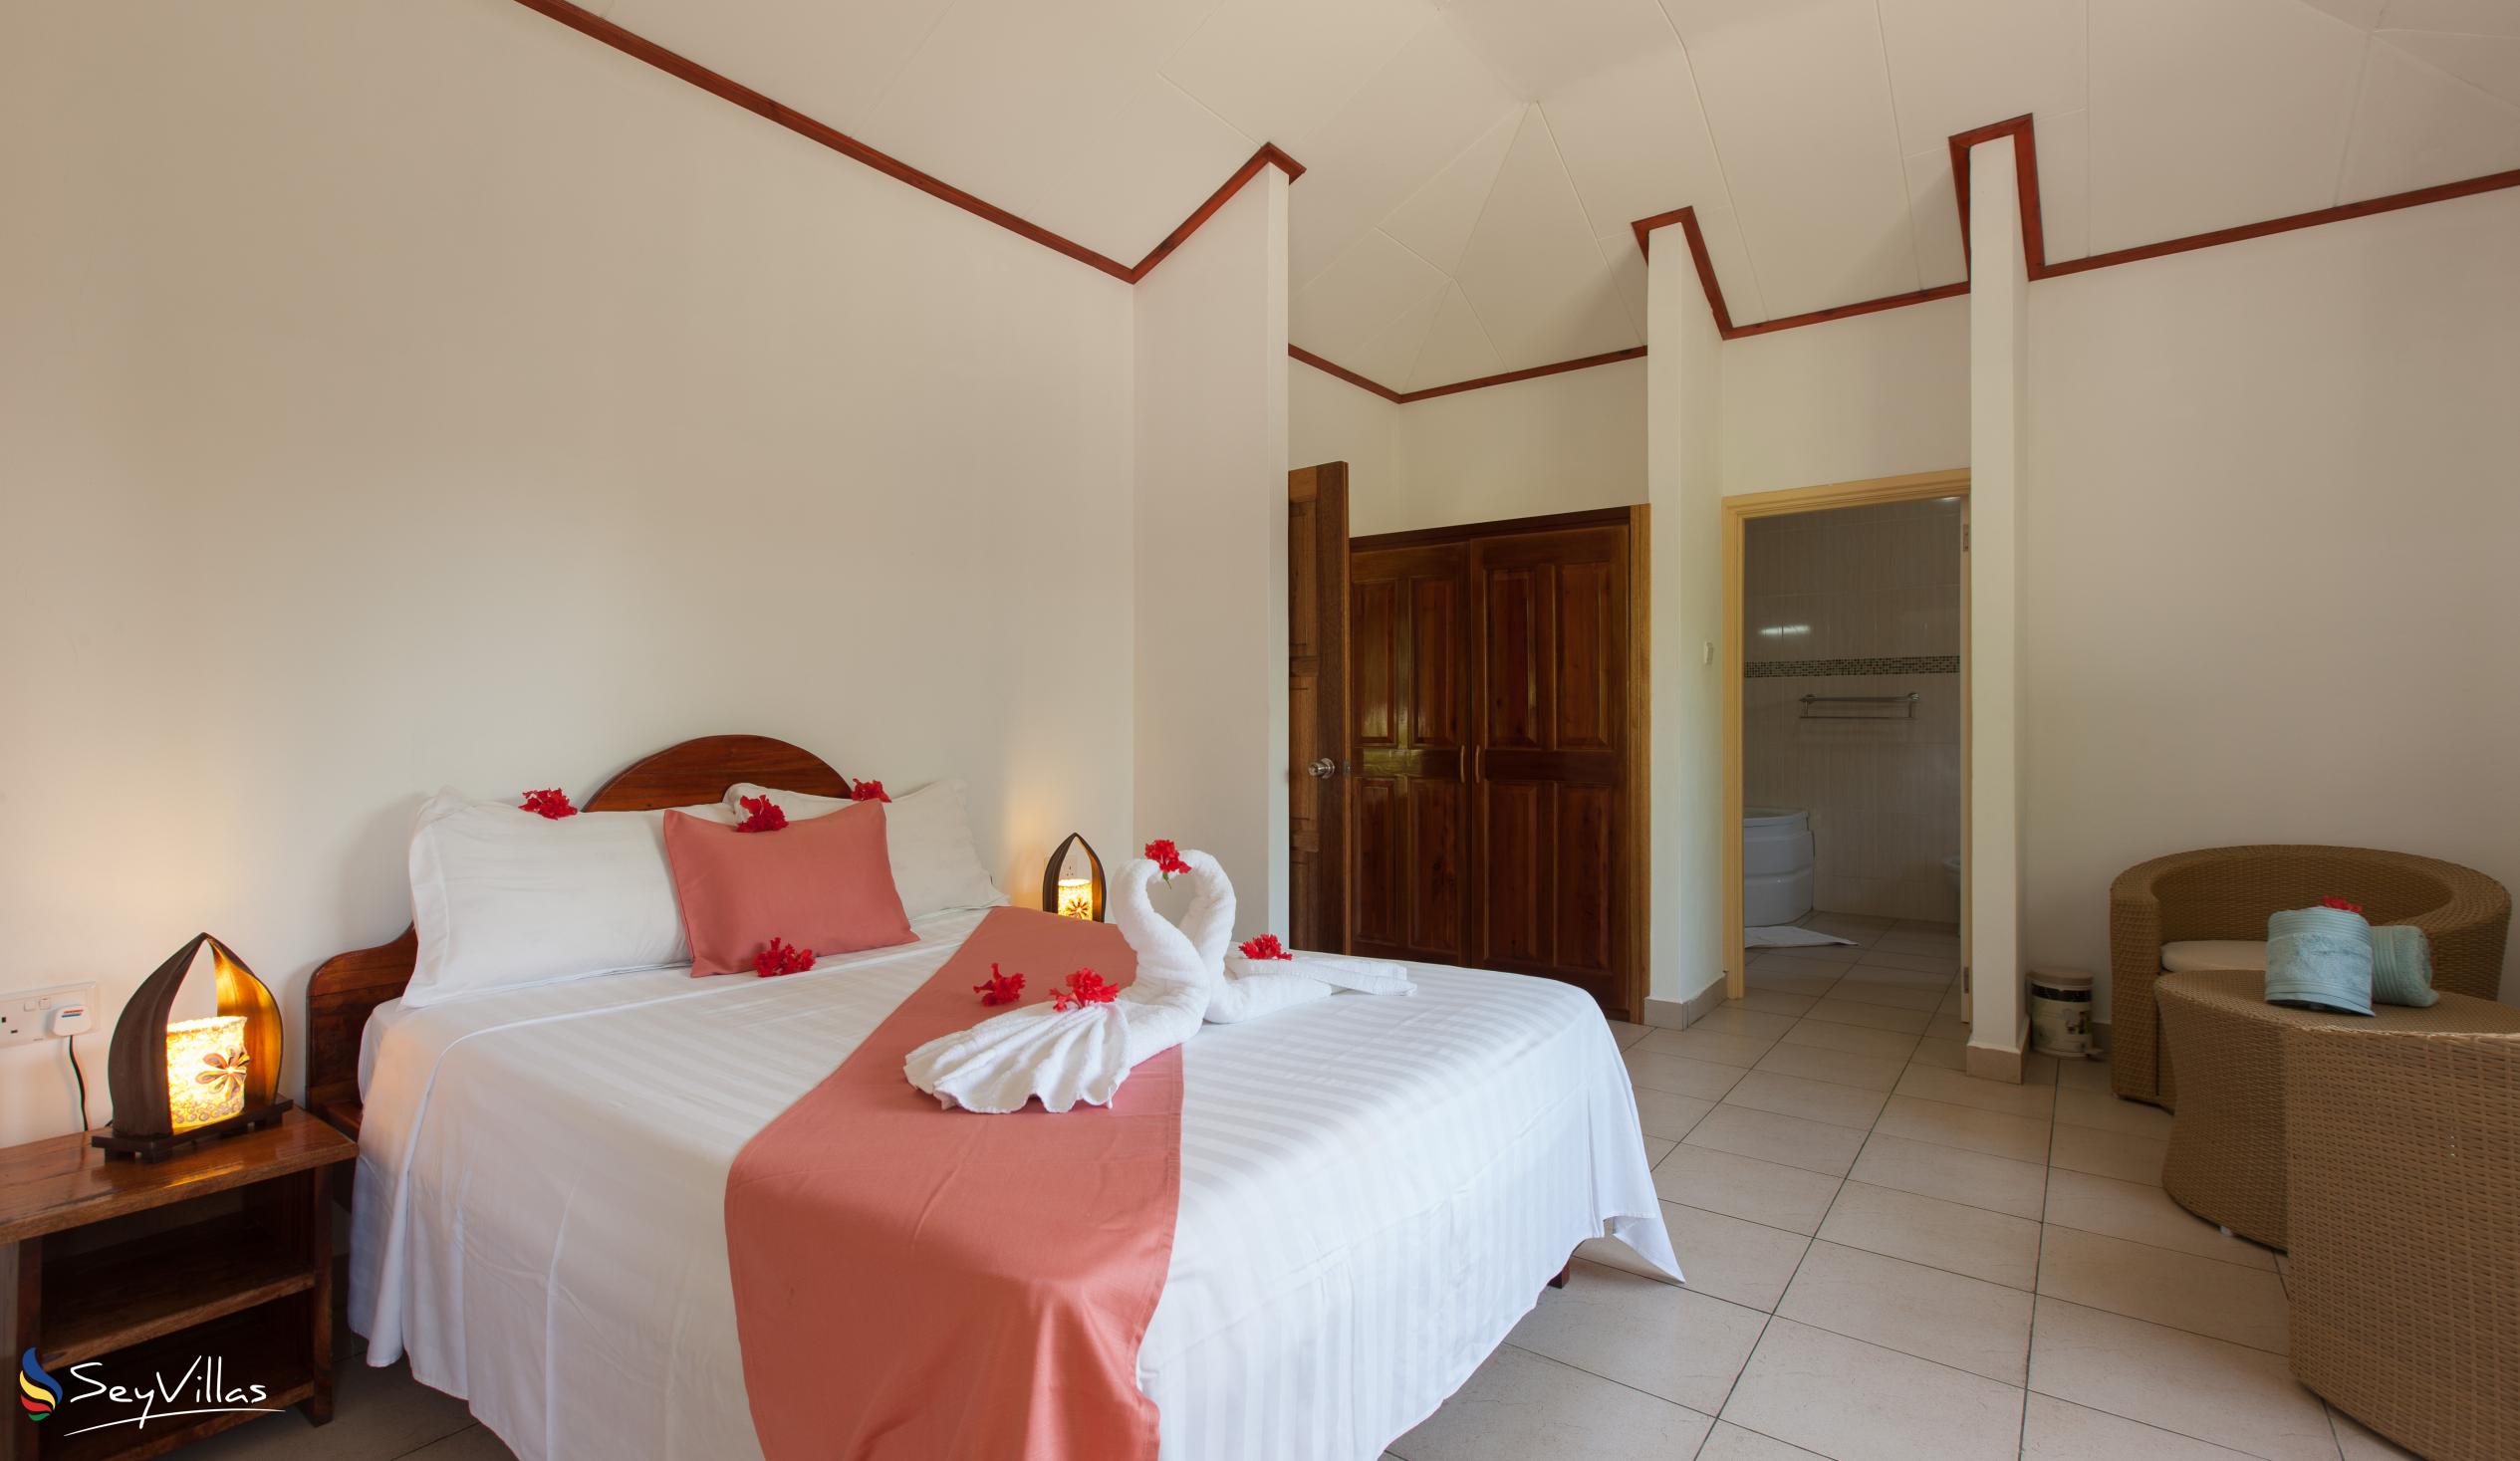 Foto 17: Hostellerie La Digue - Chalet mit 3 Schlafzimmern - La Digue (Seychellen)